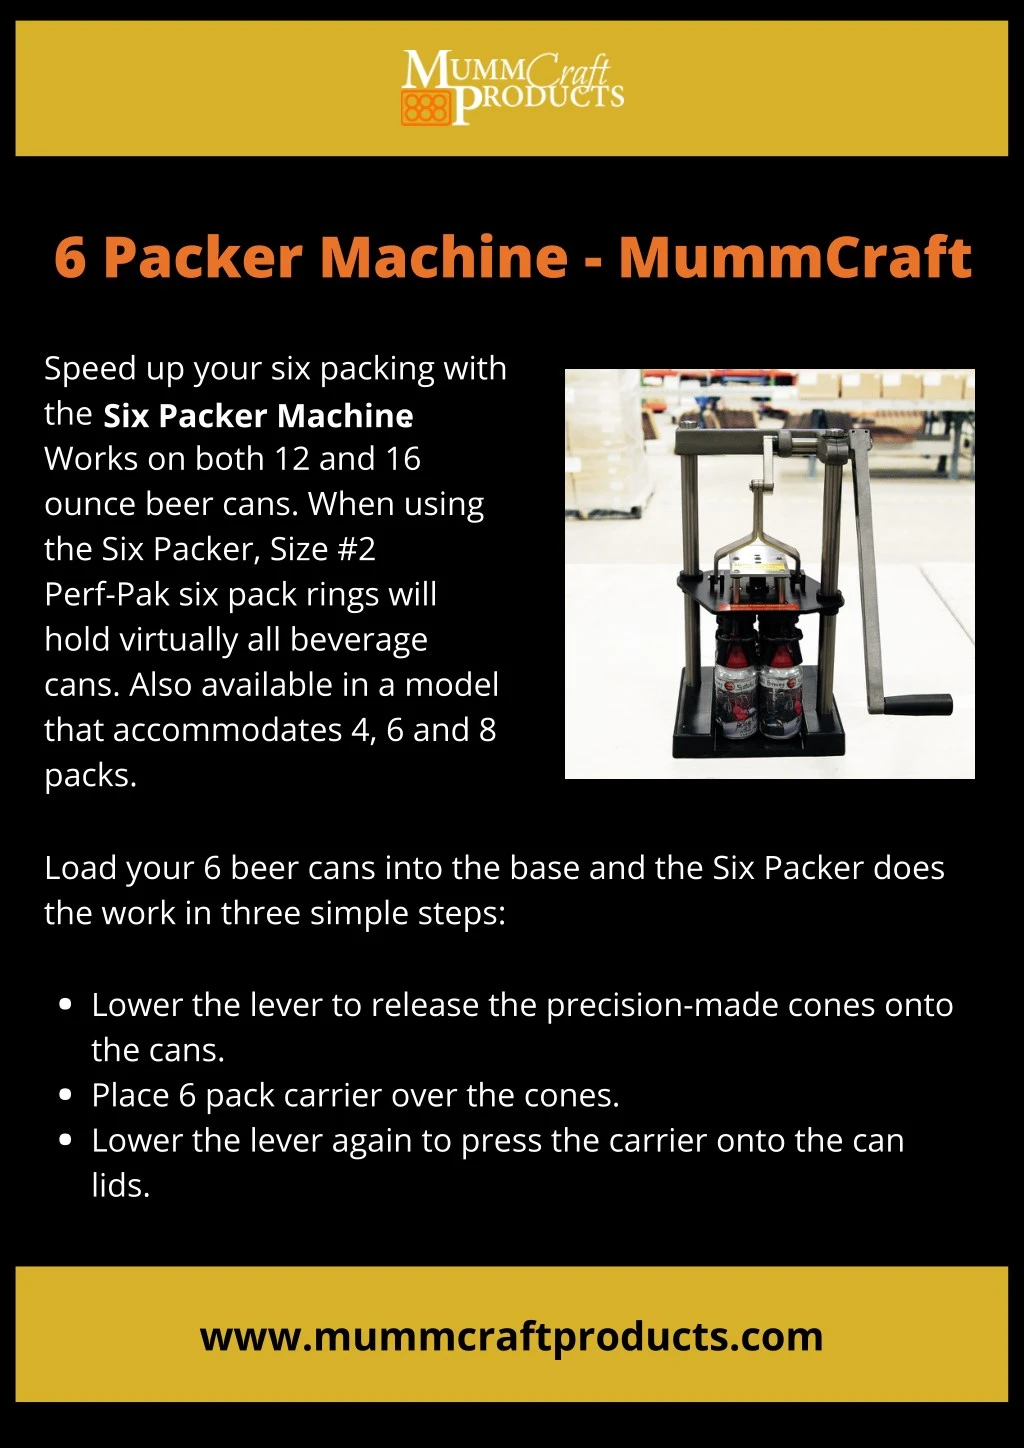 6 packer machine mummcraft